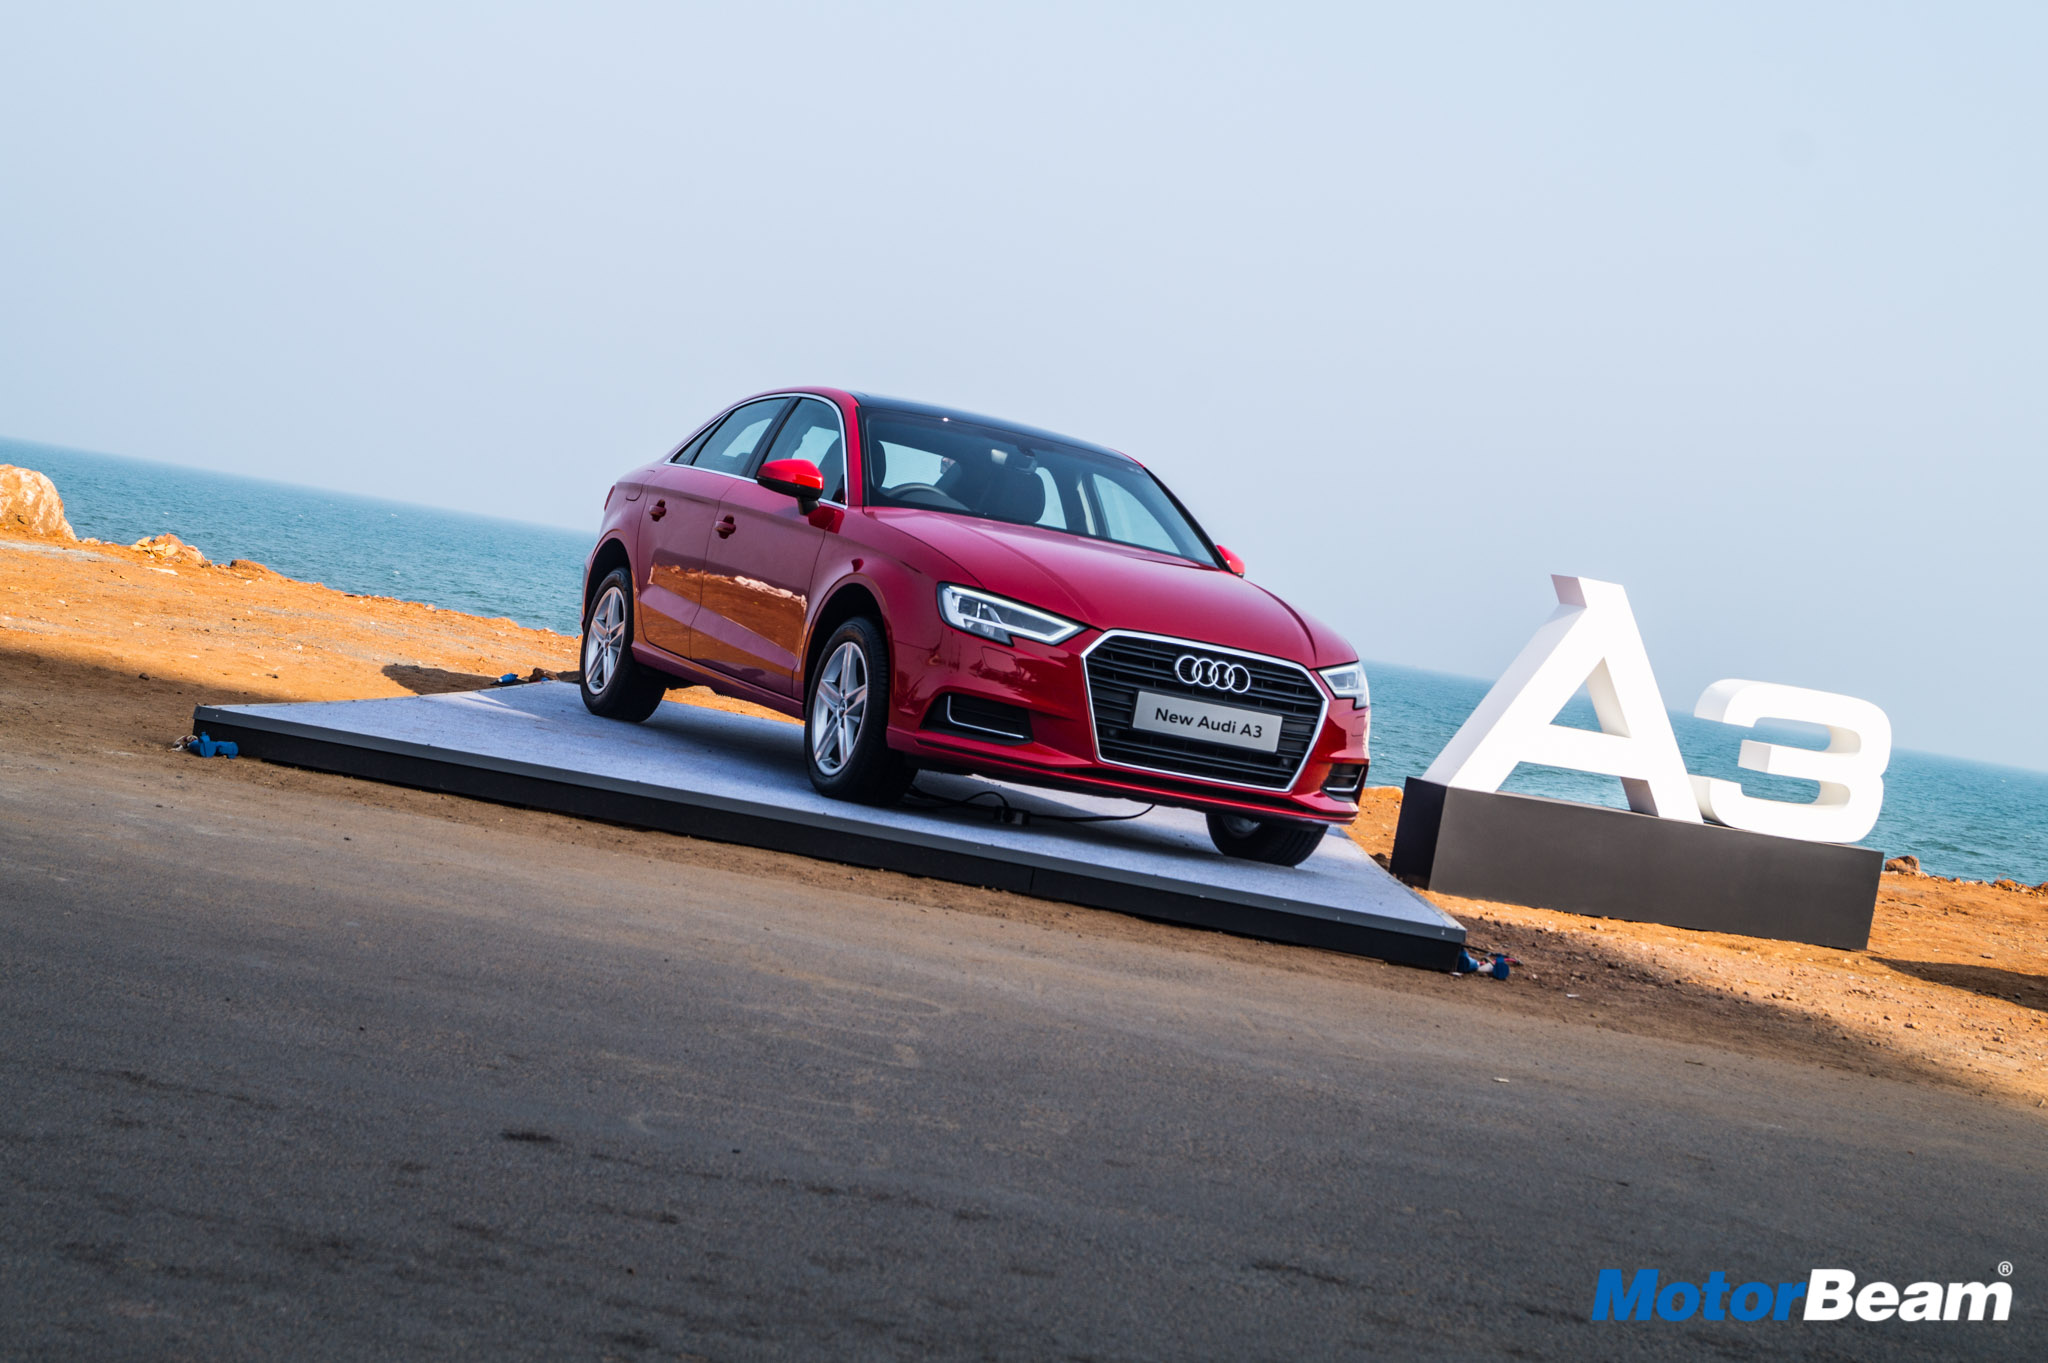 2017 Audi A3 Facelift Review